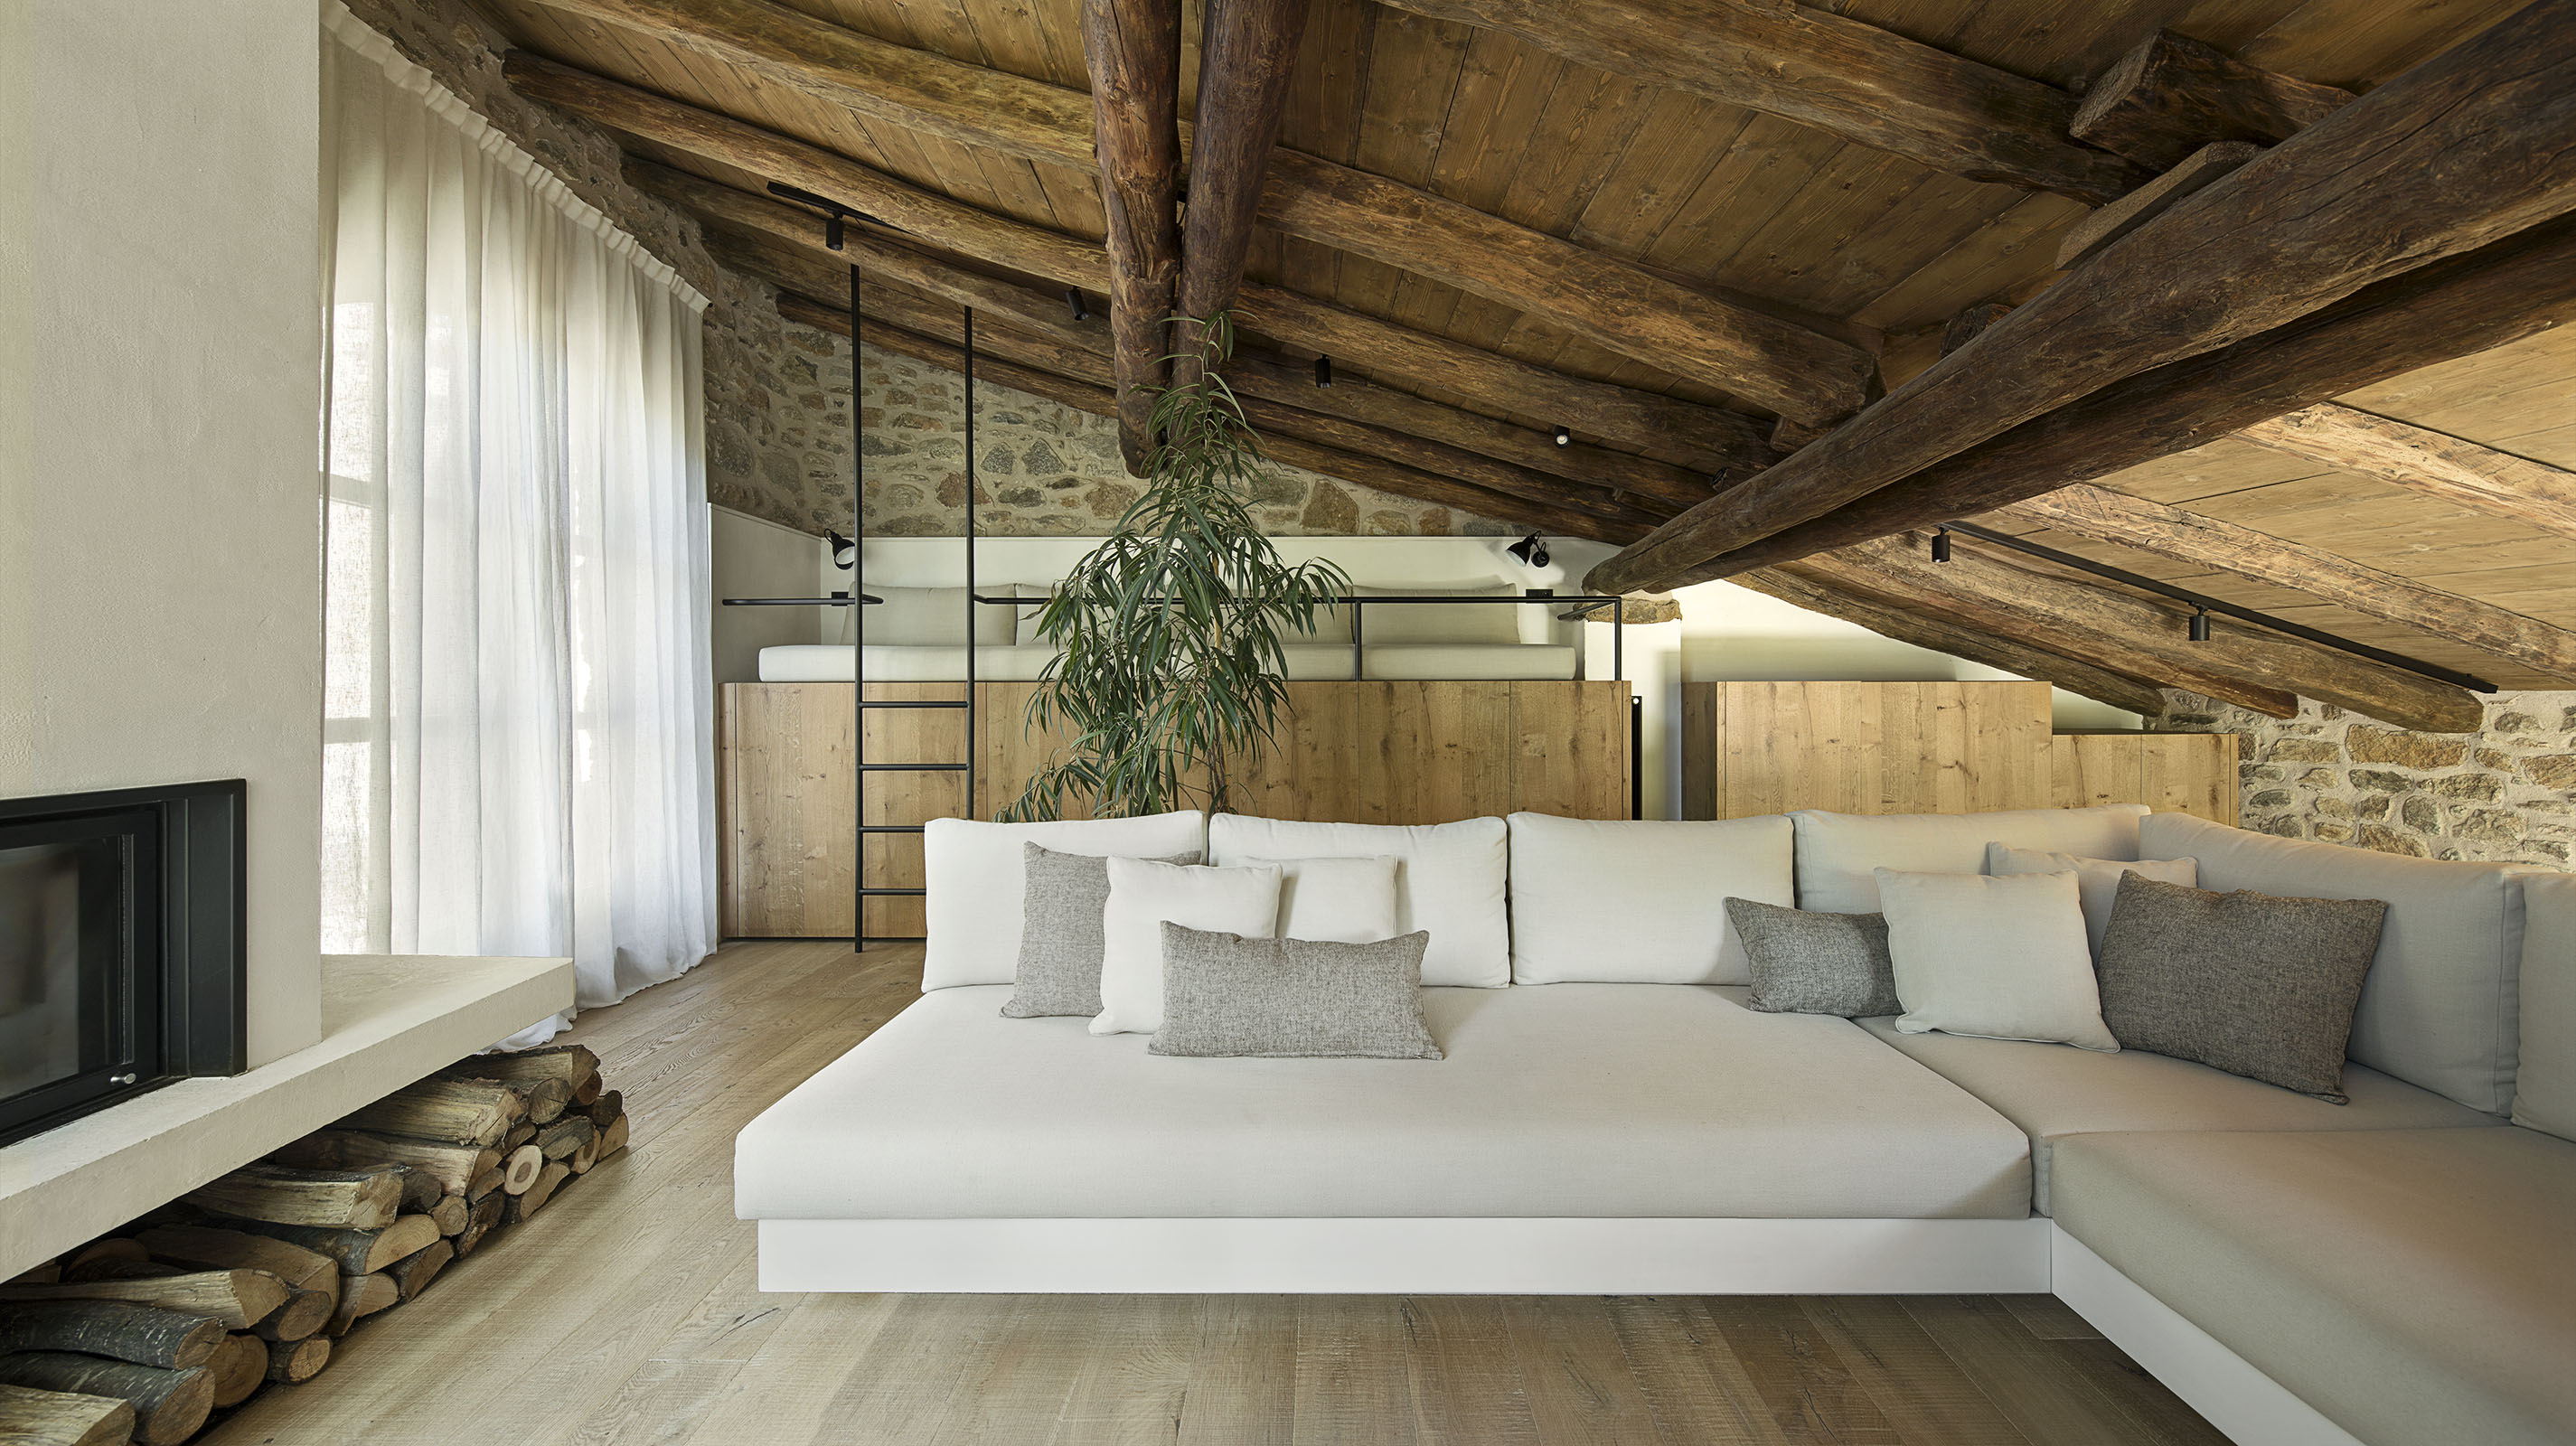 sofá blanco y gris esquina, techo con vigas de madera